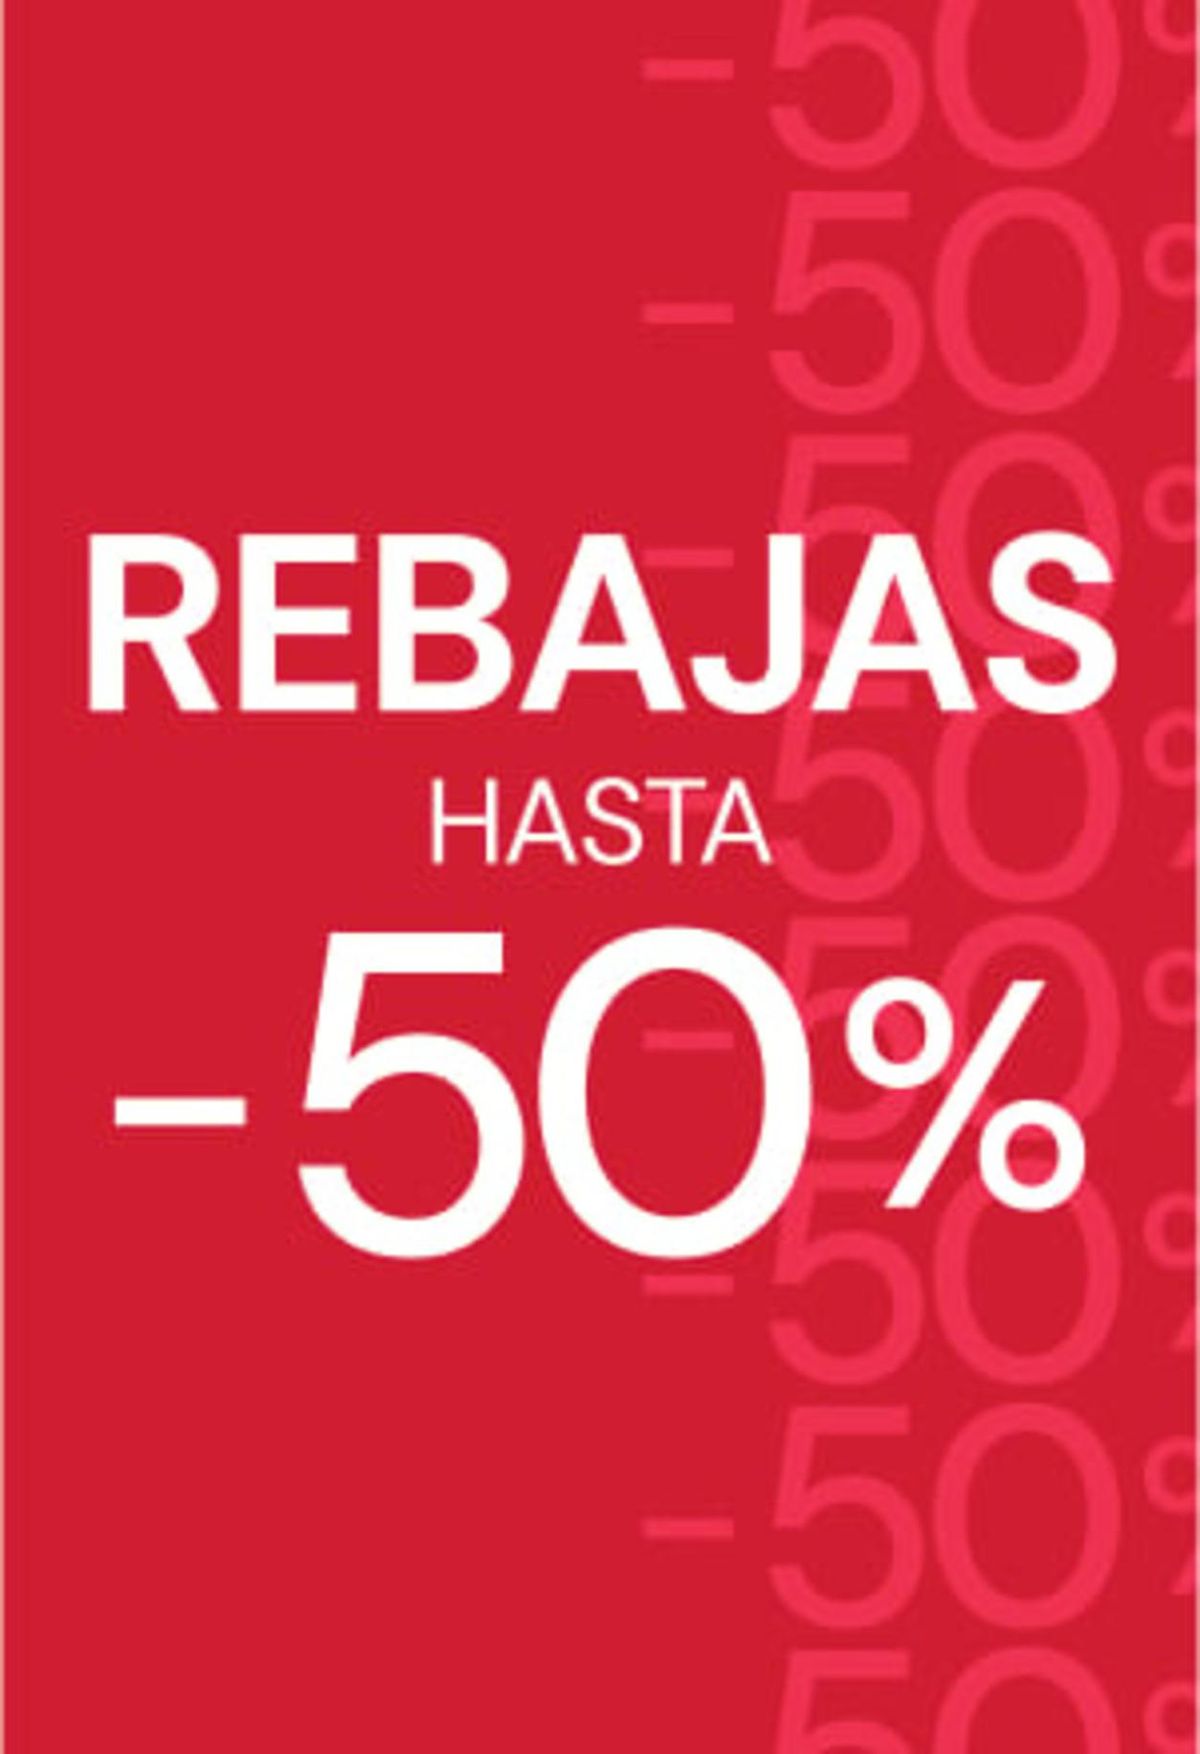 Catalogue Rebajas hasta -50%, page 00001